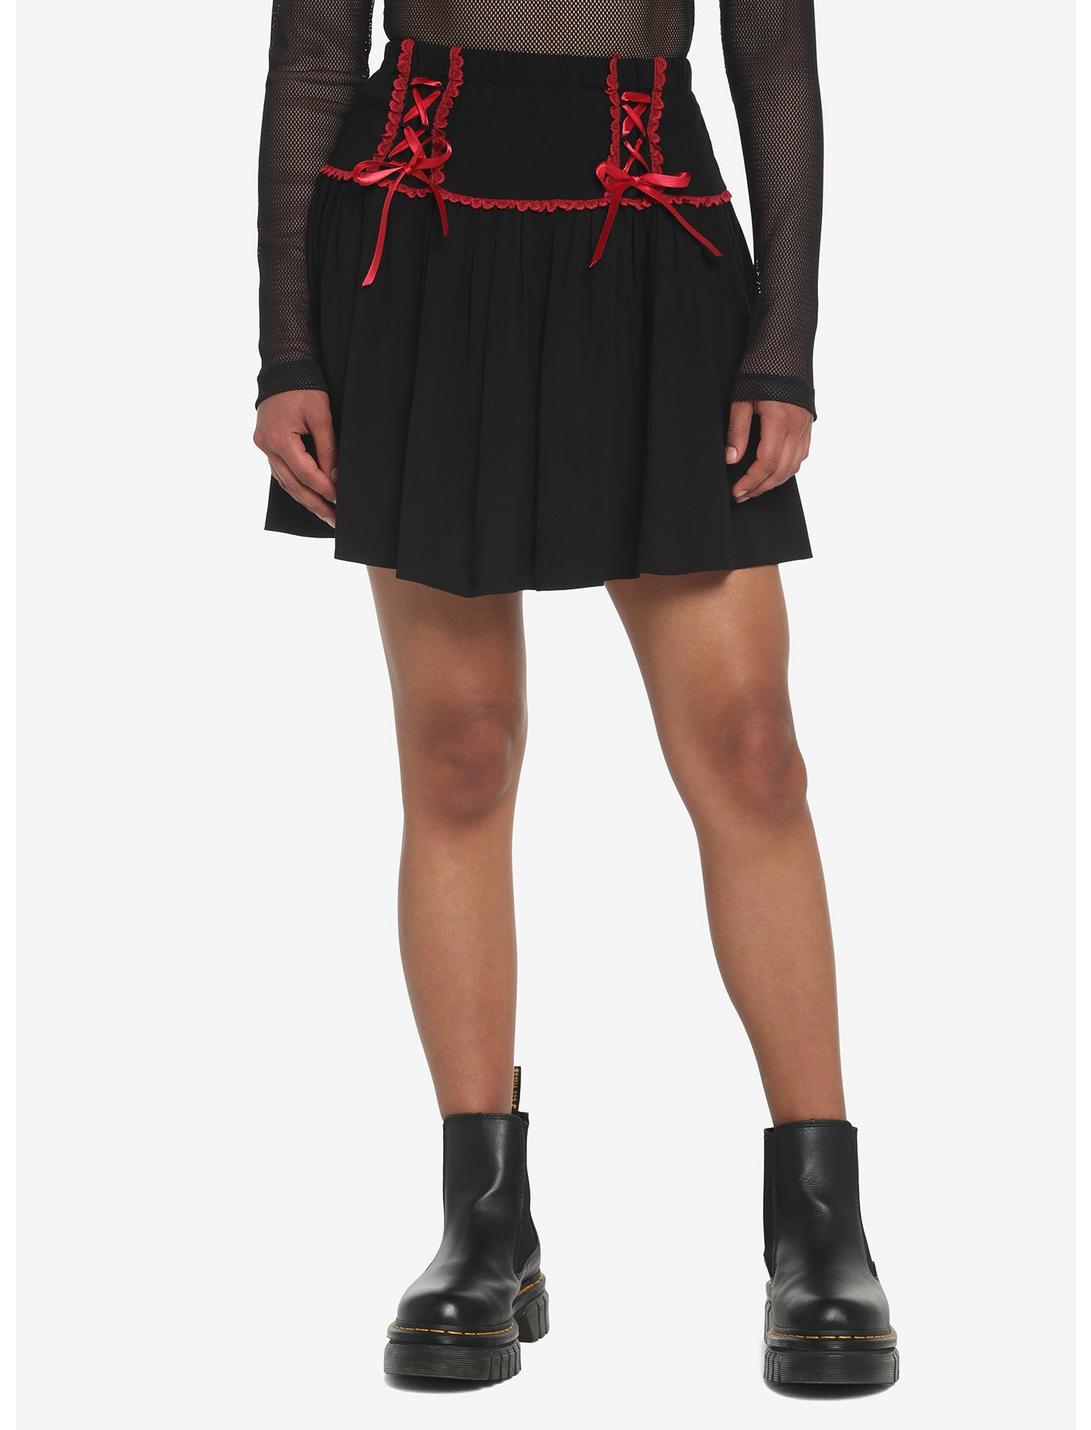 Black & Red Lace-Up Skirt, BLACK, hi-res